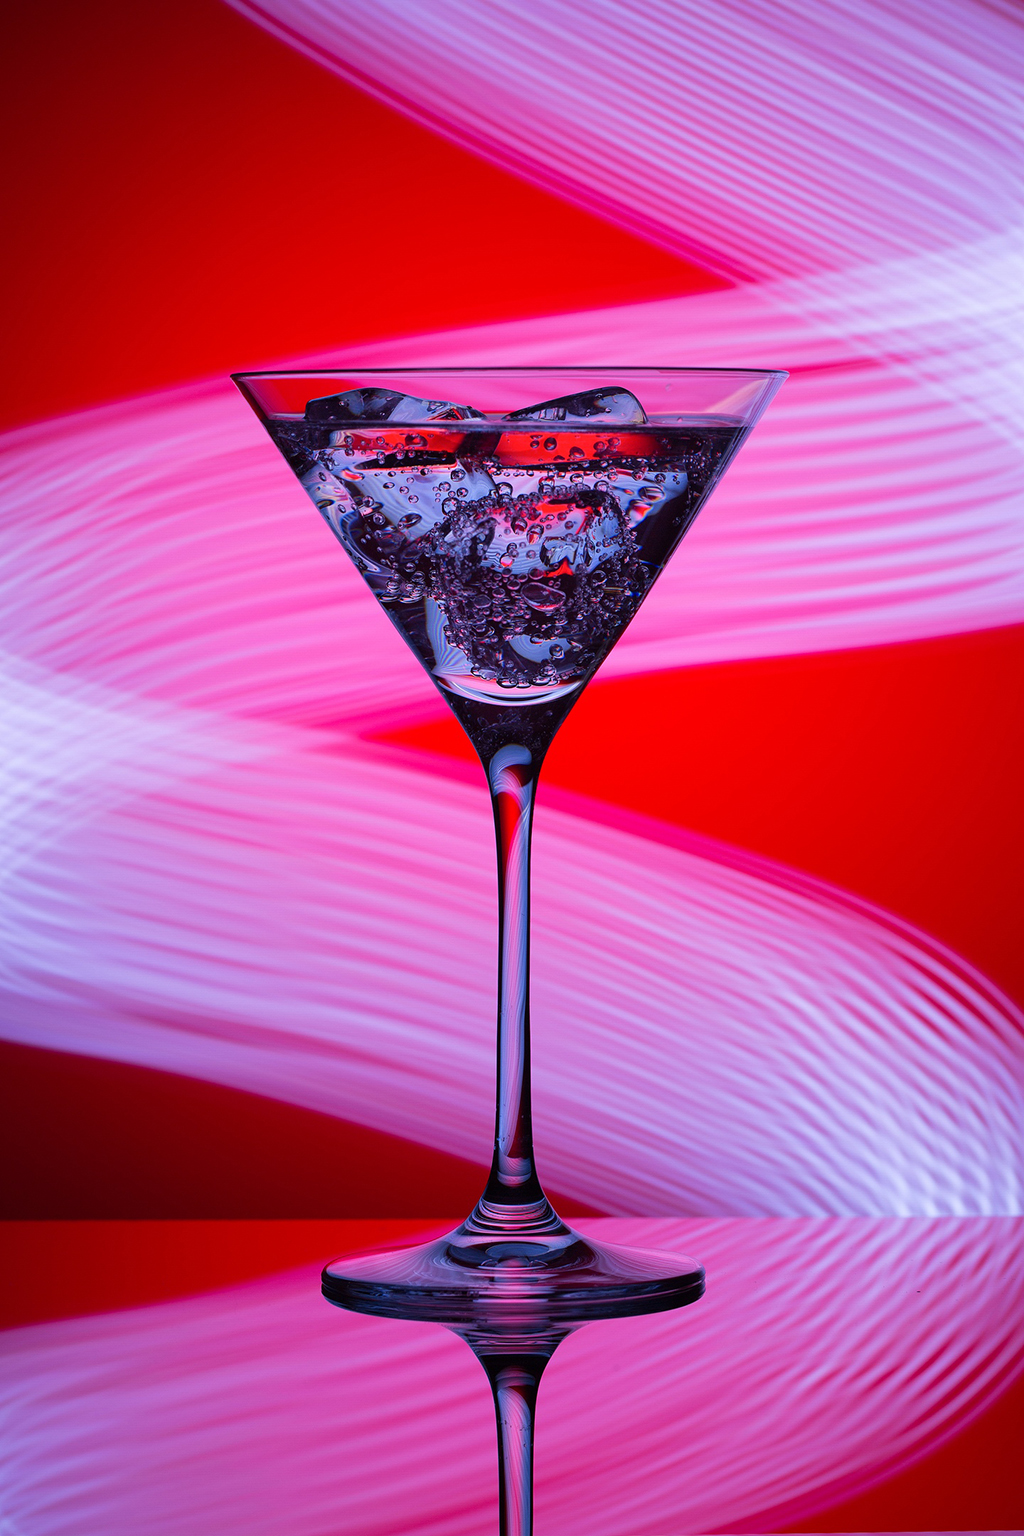 Рекламная фуд фотография неонового коктейля для баров и ресторанов г. Сочи. Сделана в процессе фотосъемки для ресторана